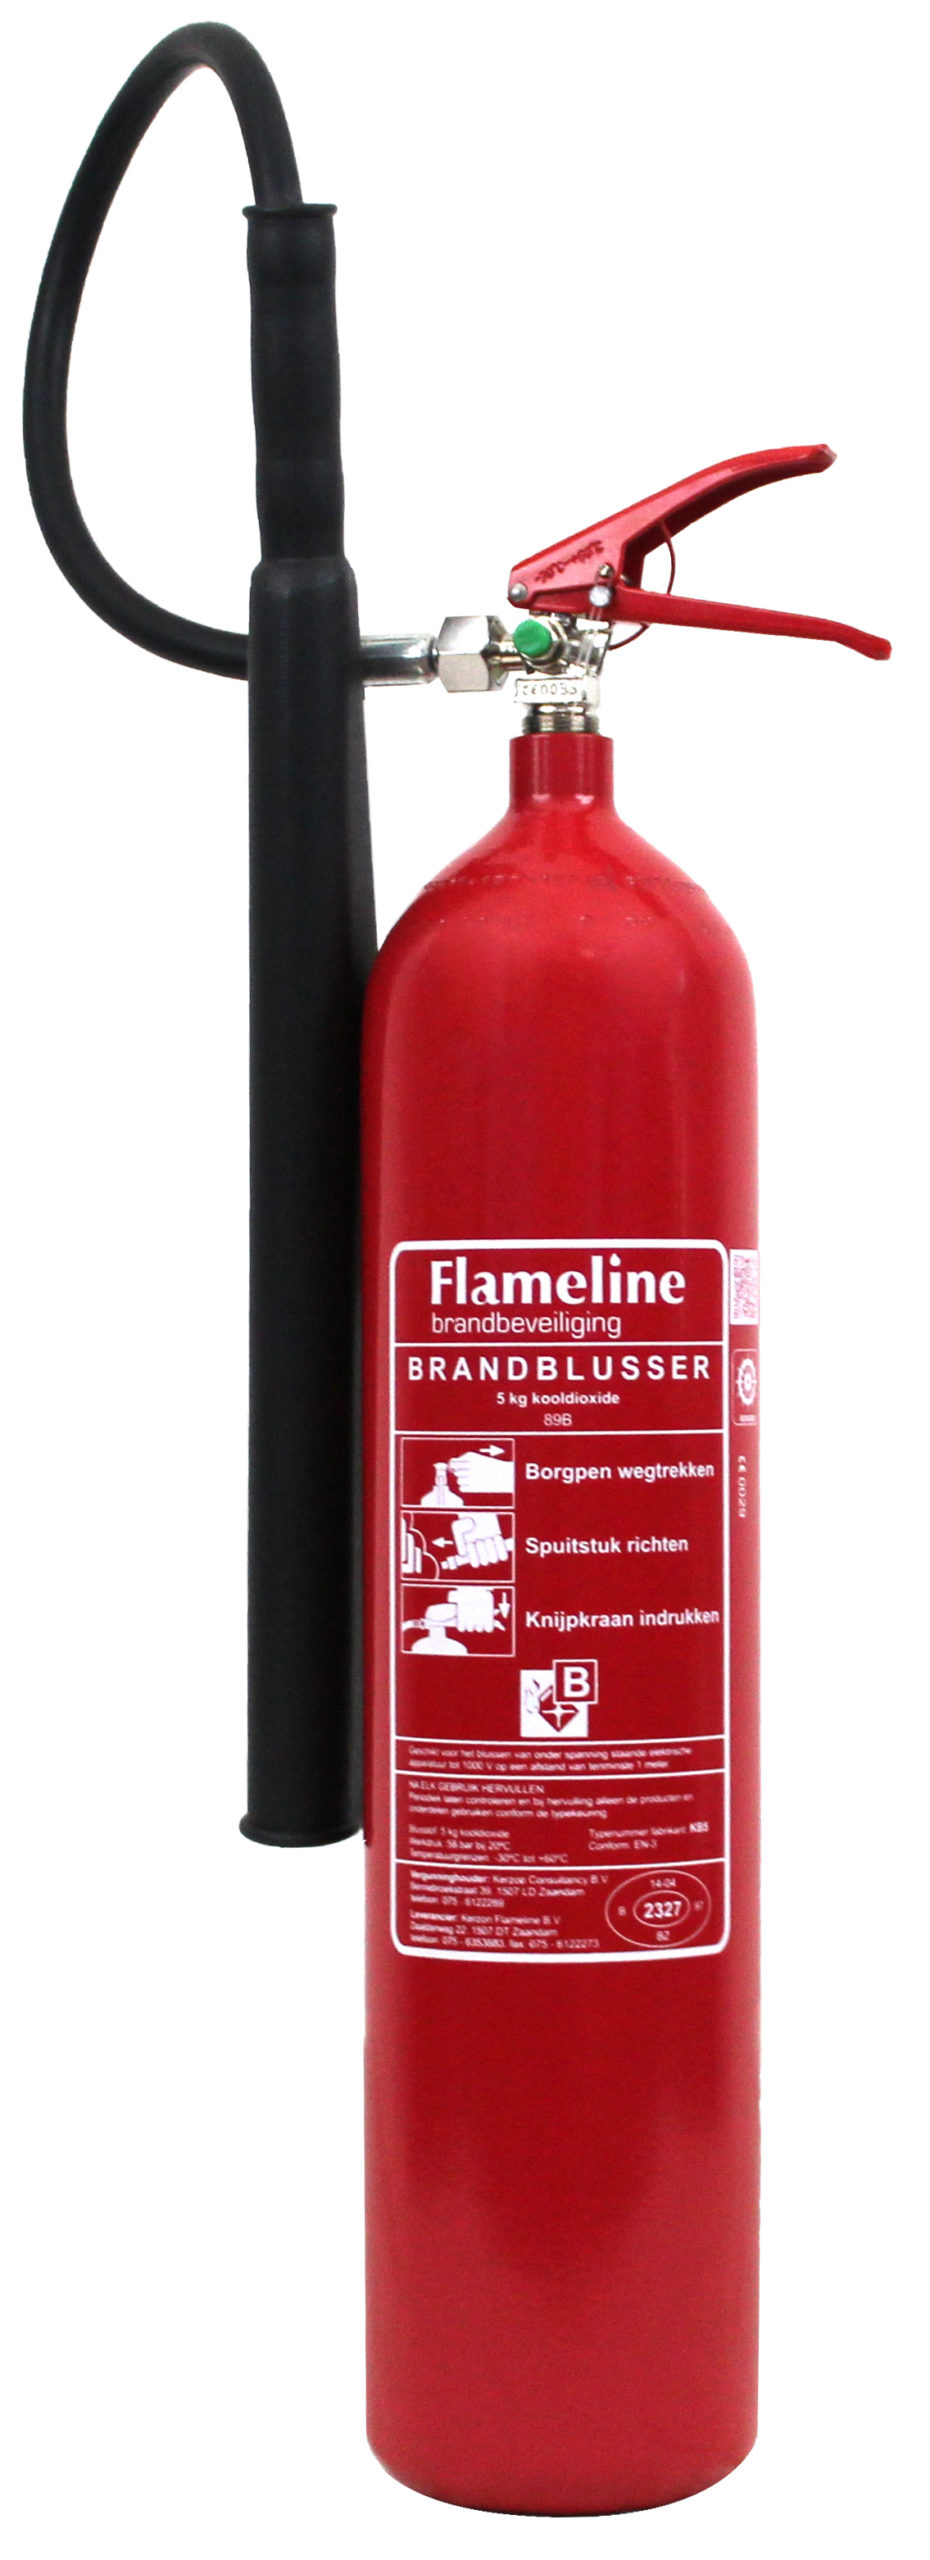 Flameline KB5 CO2 5KG blustoestel